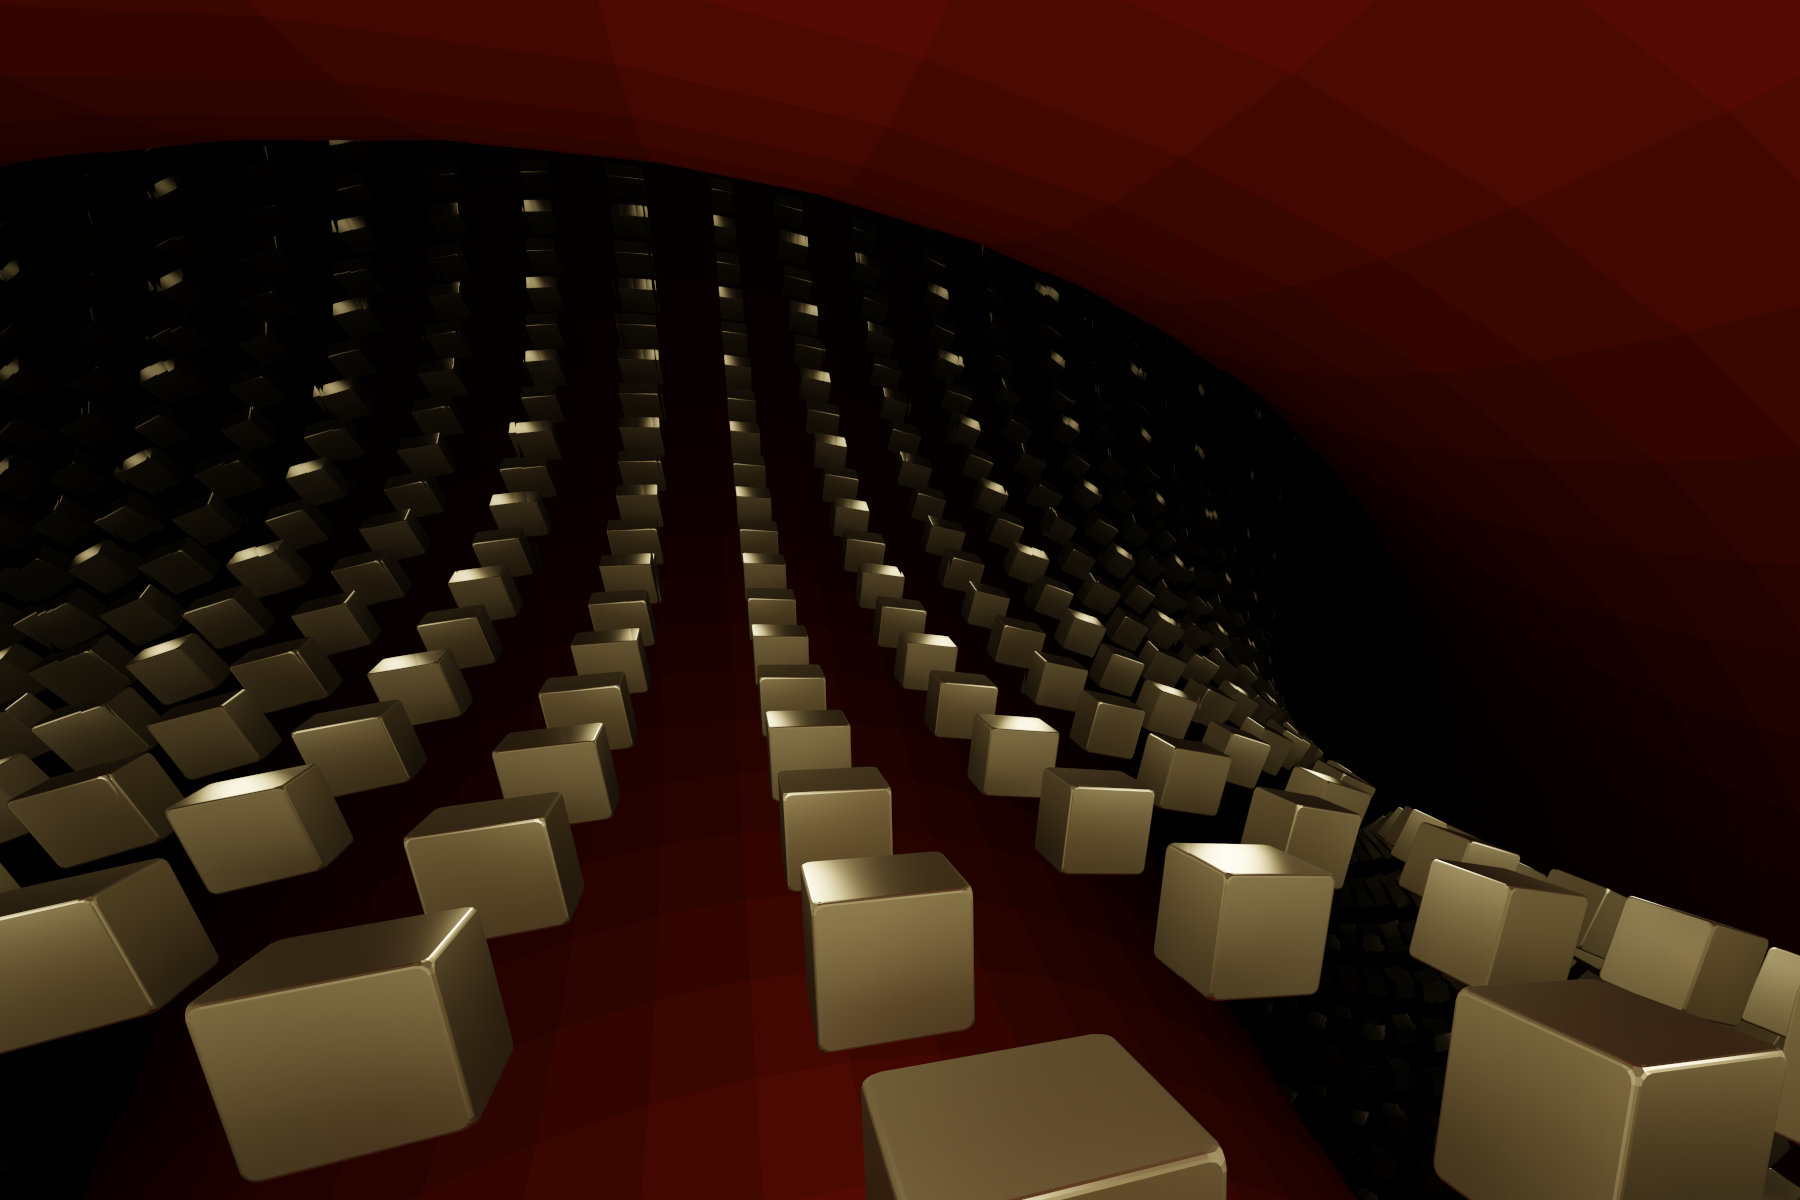 Virtuelle abstrakte Szenerie, Abstrakte digitale Kunst, Raytracing, Computer-gerendertes Bild, 2022. Ein goldener Würfel erscheint in vielen Spiegelbildern auf einer gebogenen roten Fläche.